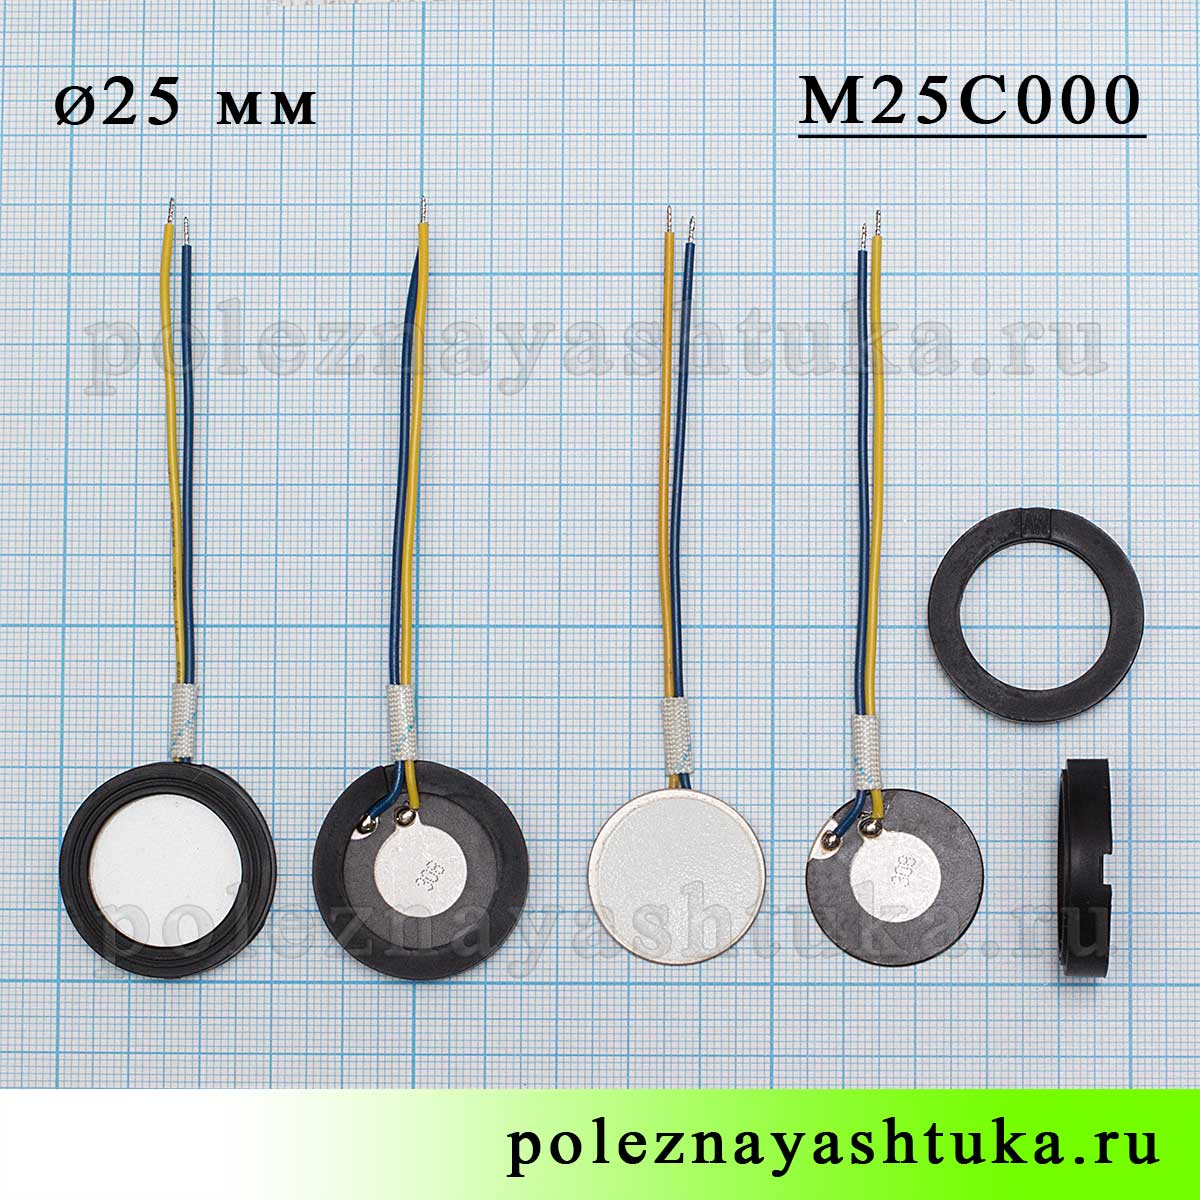 Ультразвуковая мембрана для увлажнителя, 25 мм, с проводами, размеры пьезоизлучателя